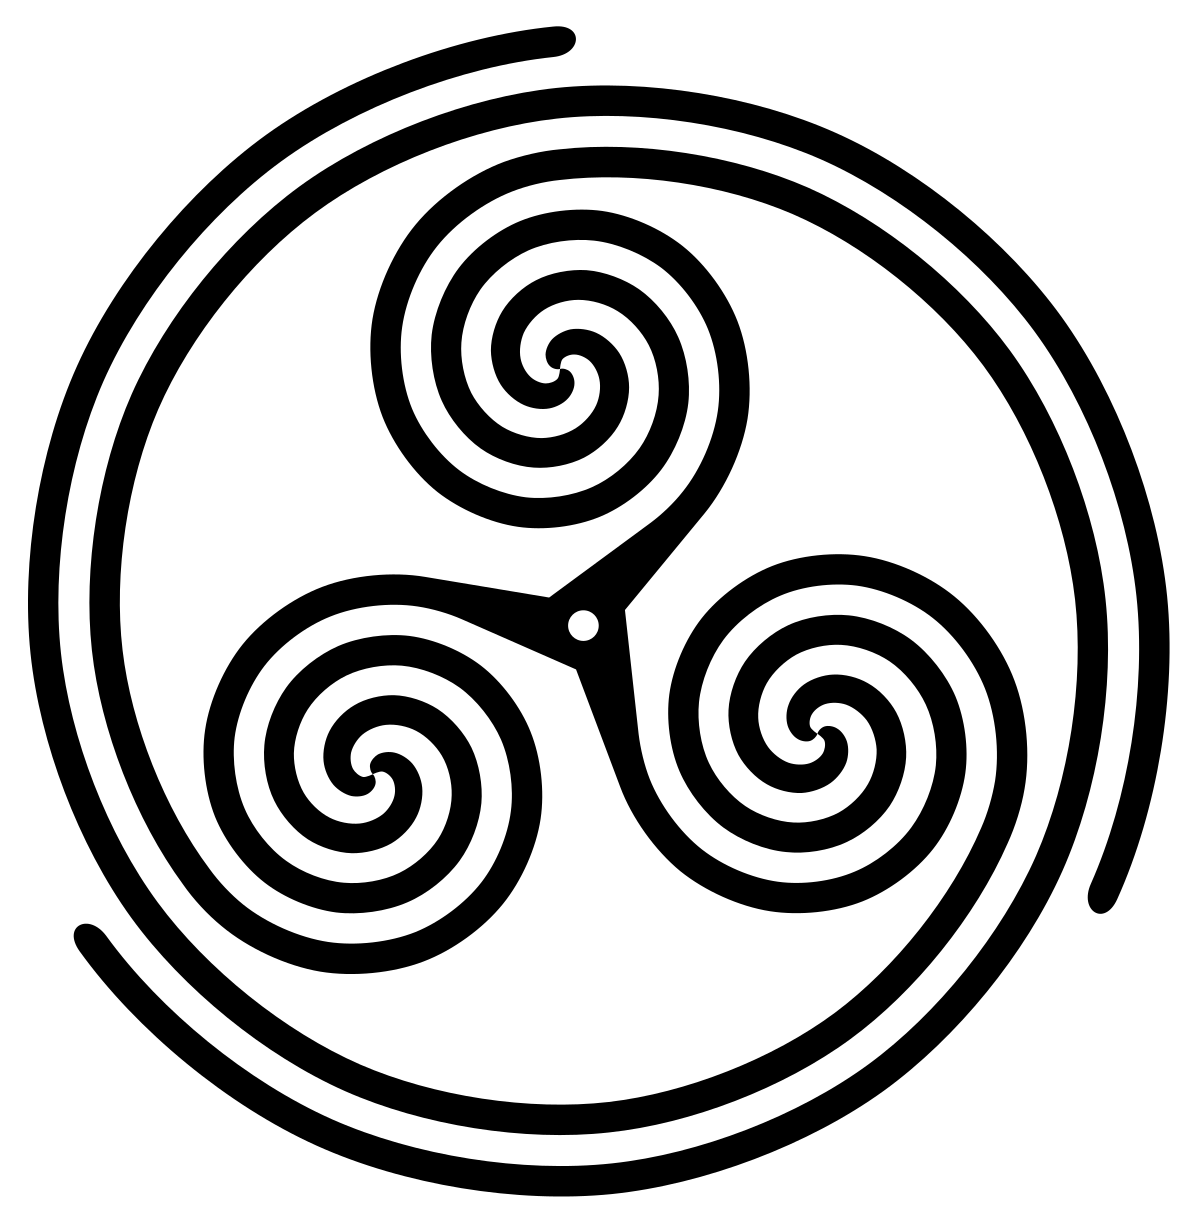 Символ 3 скопировать. Трискель (Трискелион. Трискель кельтов. Трискелион Кельтский. Тройная спираль Ньюгрейнджа.